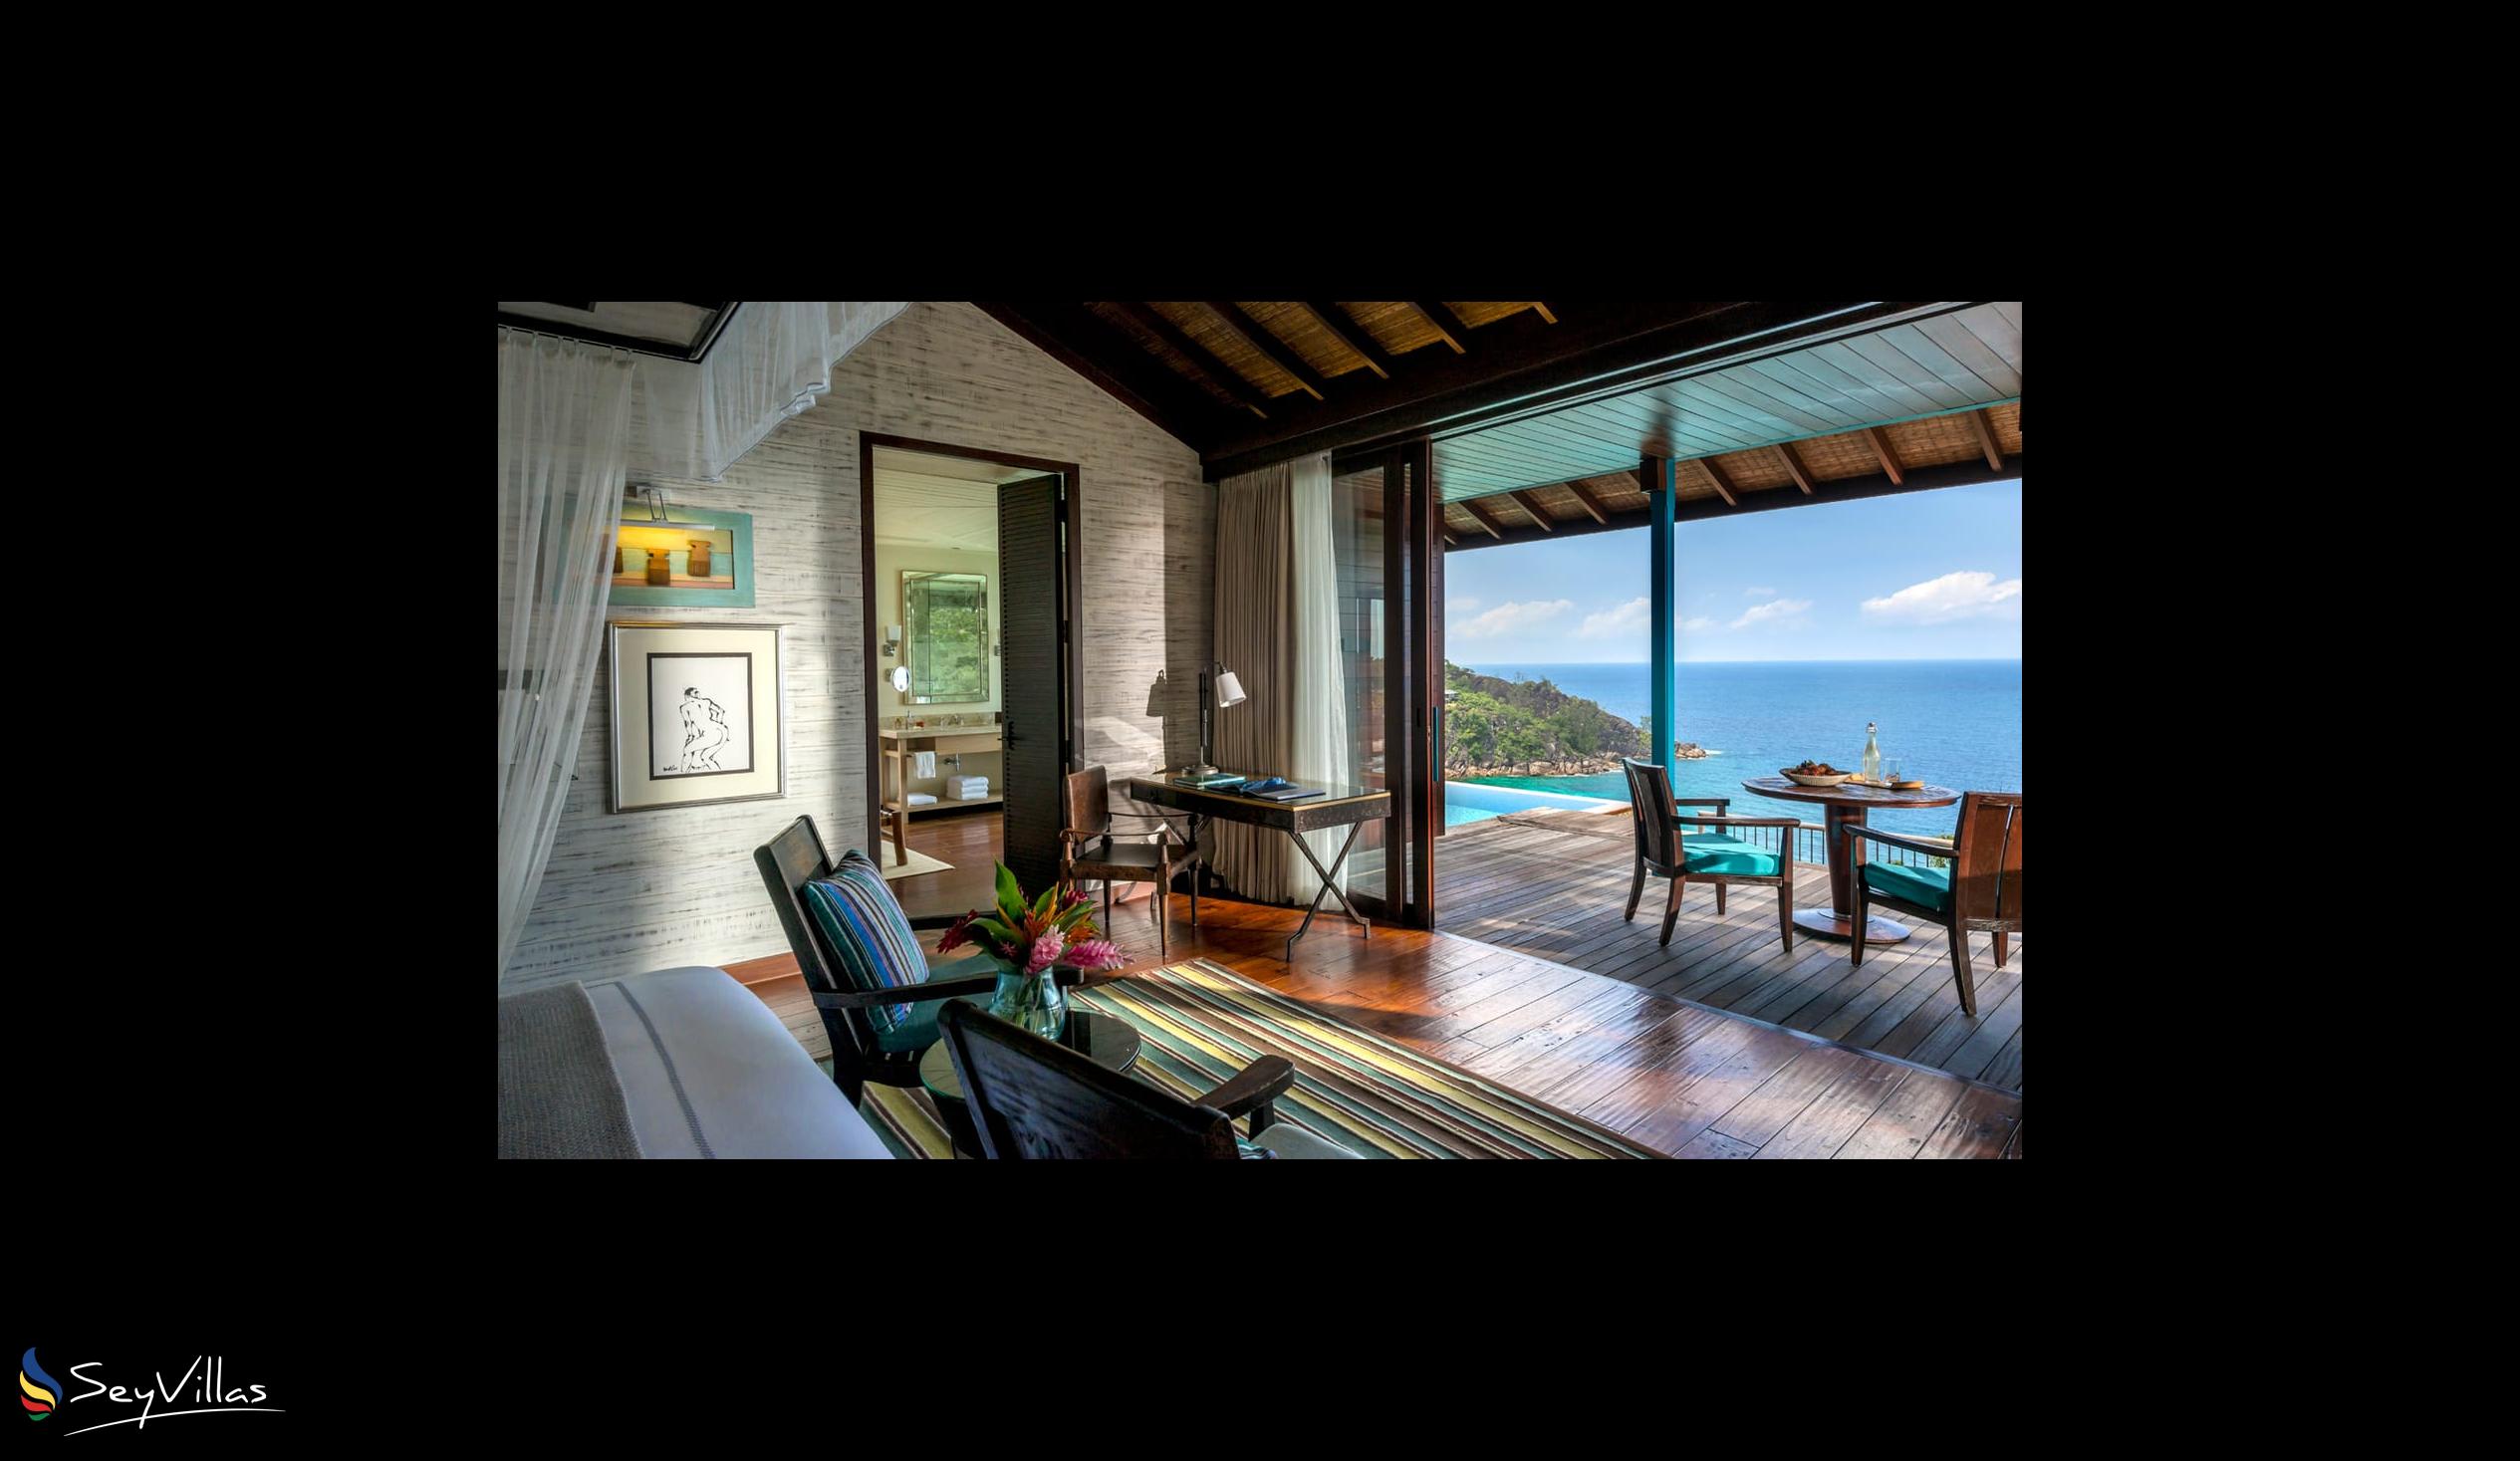 Foto 39: Four Seasons Resort - Hilltop Ocean View Villa - Mahé (Seychelles)